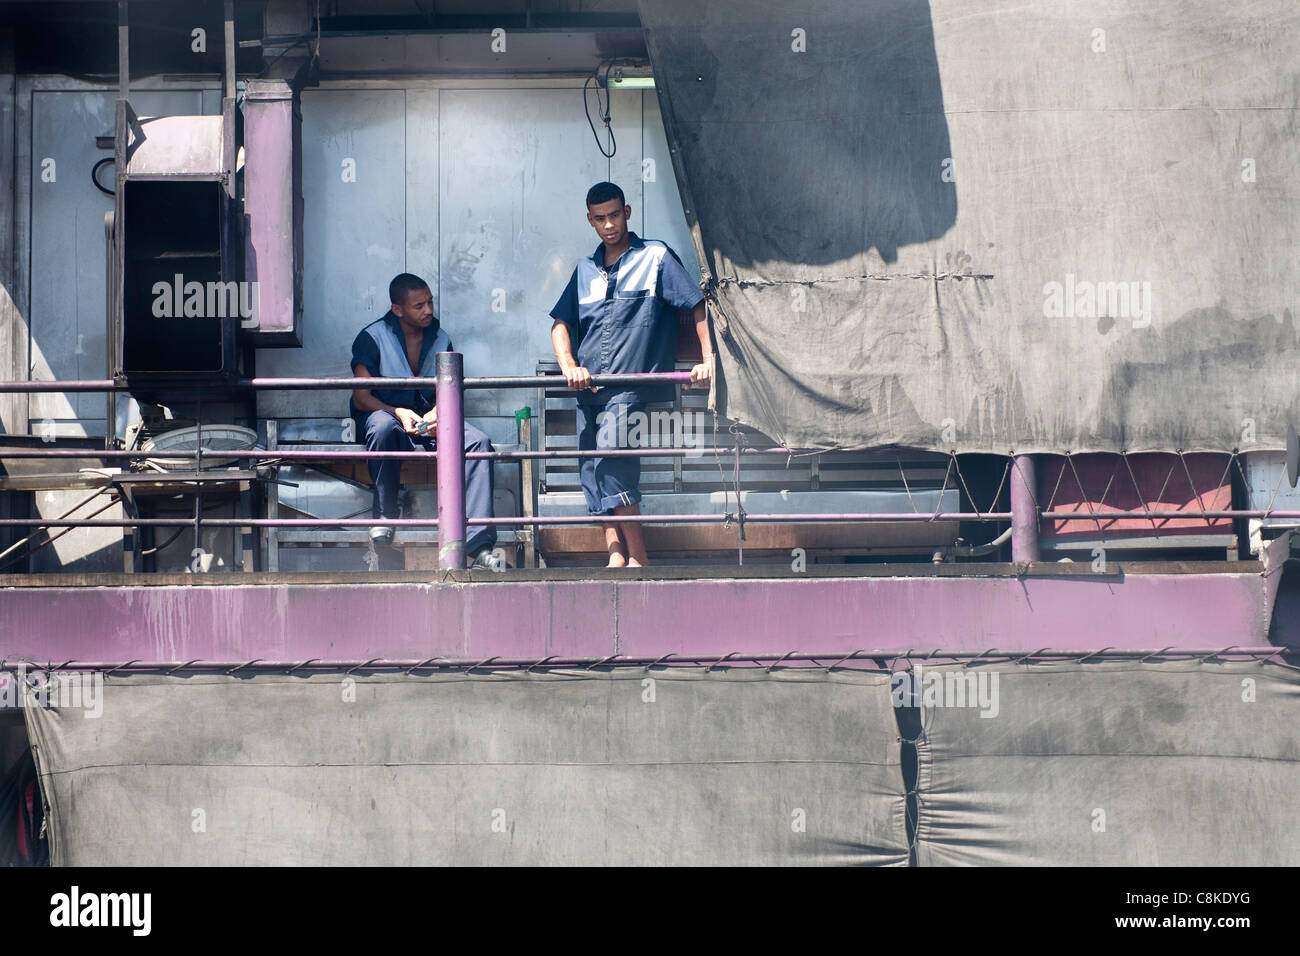 Zwei Besatzungsmitglieder des Nil Kreuzfahrt Boot sitzen in der rauchigen Dämpfe in das Heck des Schiffes hinter Leinwand-Folie Stockfoto